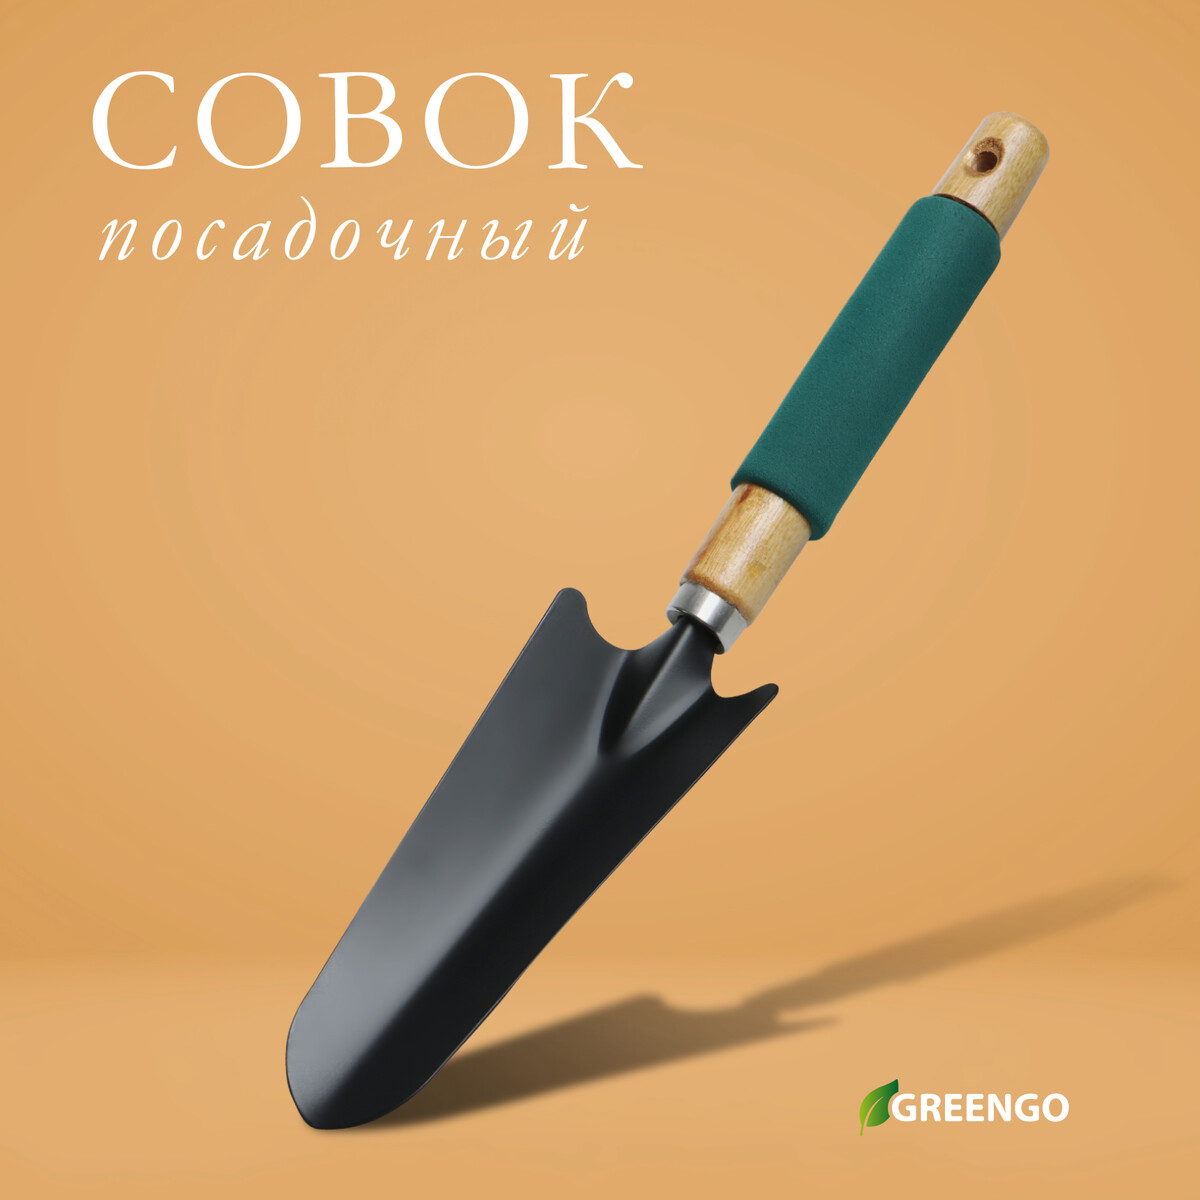 Совок посадочный greengo, длина 33,5 см, ширина 6,5 см, деревянная ручка с поролоном совок для мусора металл деревянная ручка хозяйственный глубокий